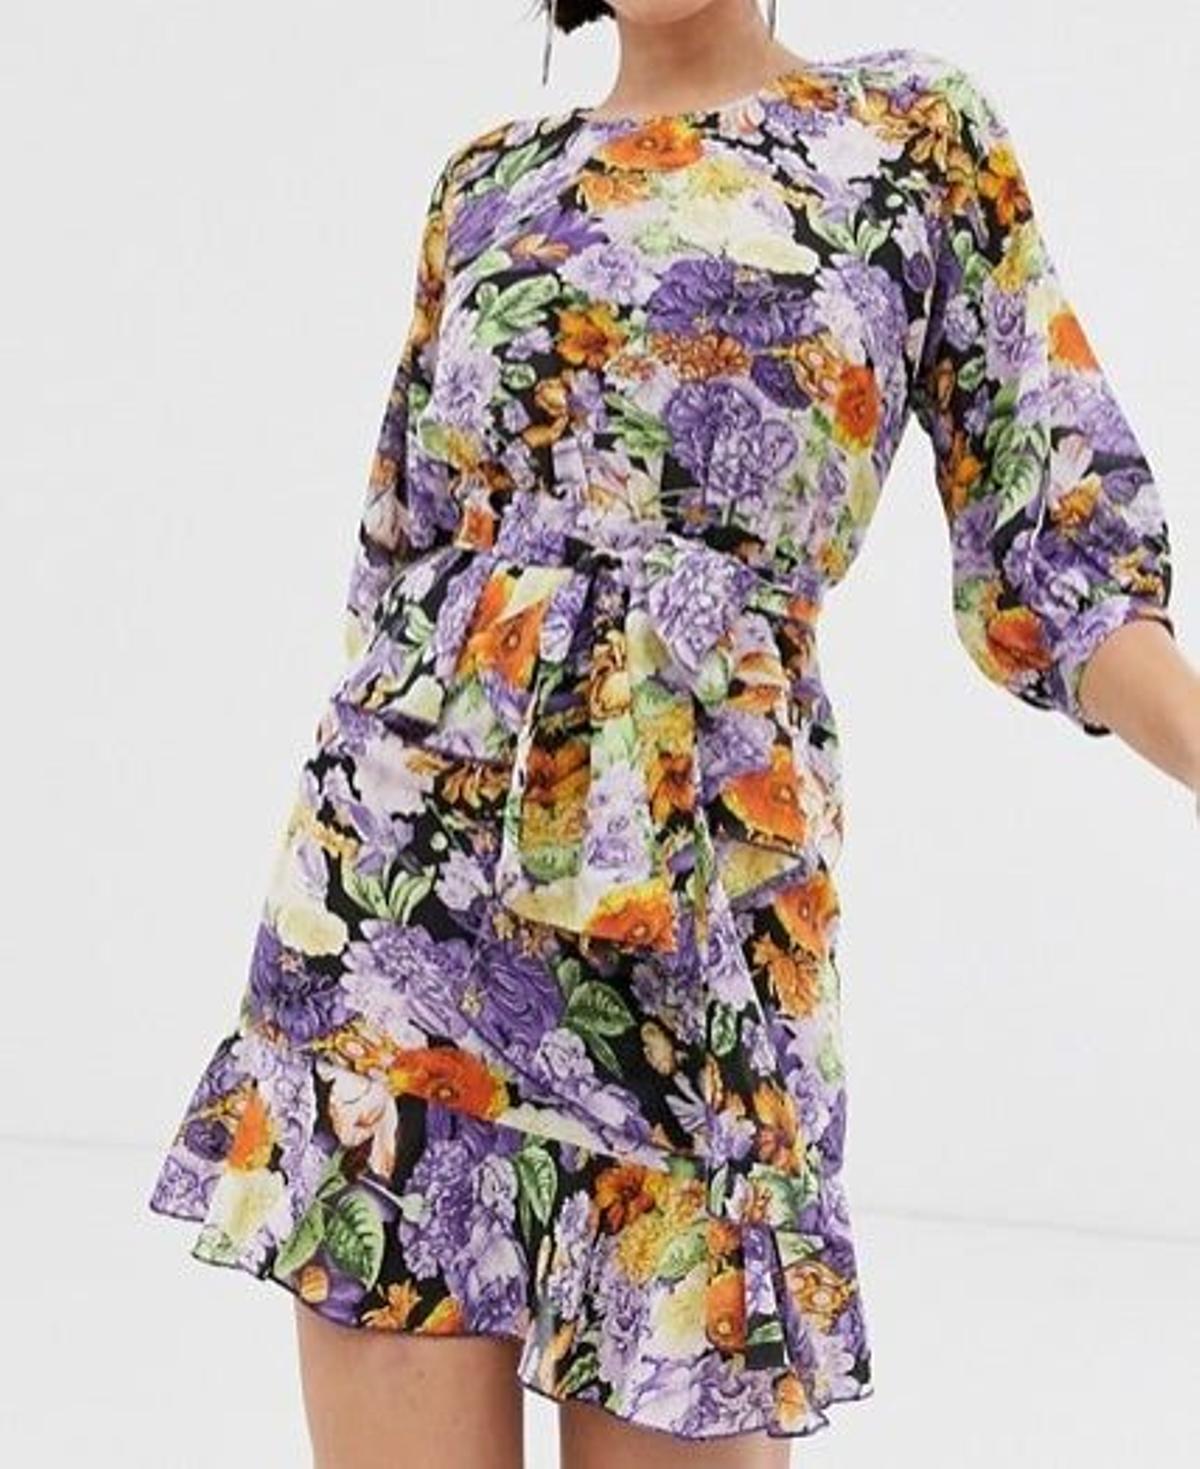 Vestido floral de PrettyLittleThing de venta en Asos (Precio: 52,99 euros)